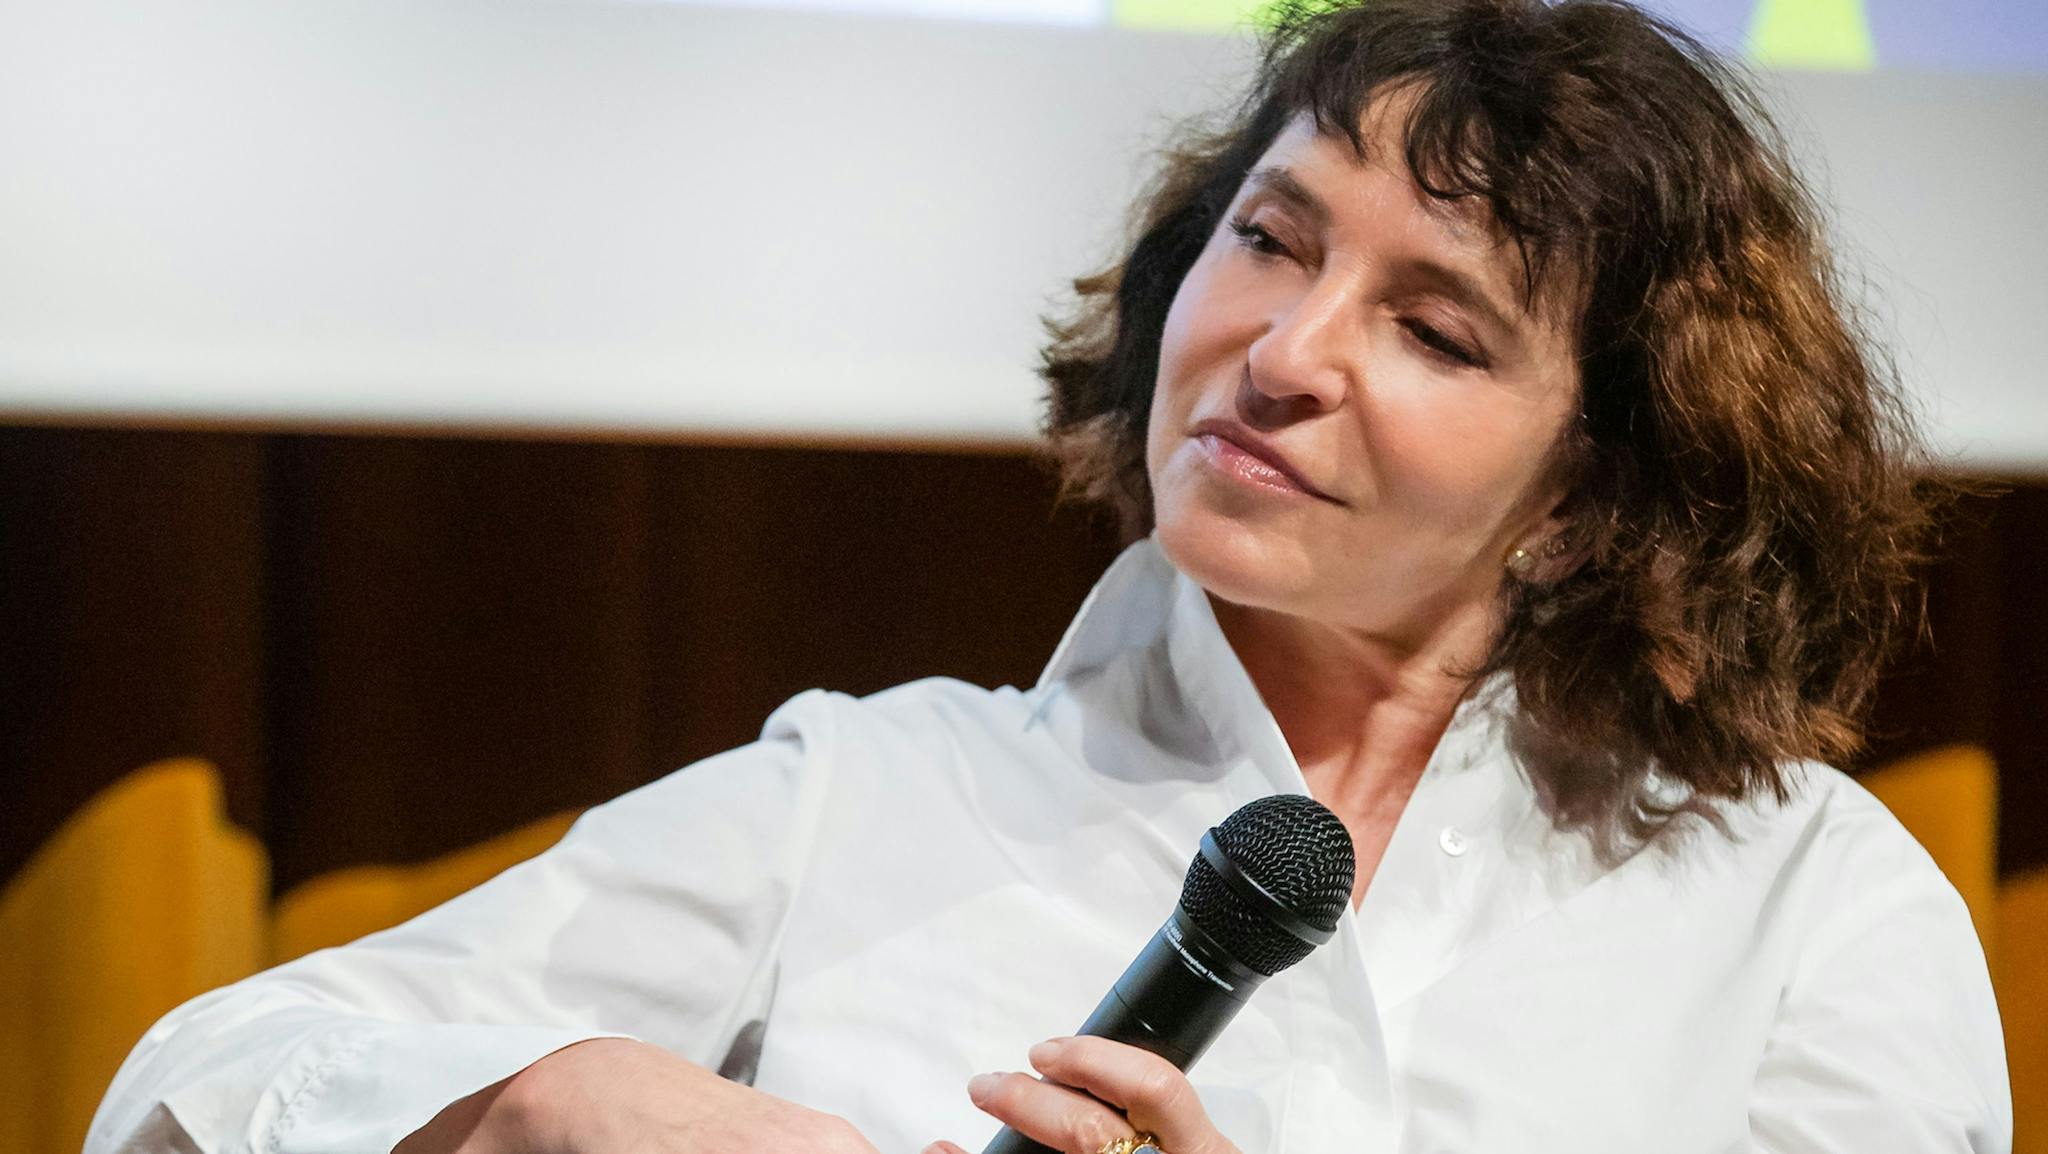 La directora Susanne Bier responde a preguntas del público en el EMIFF